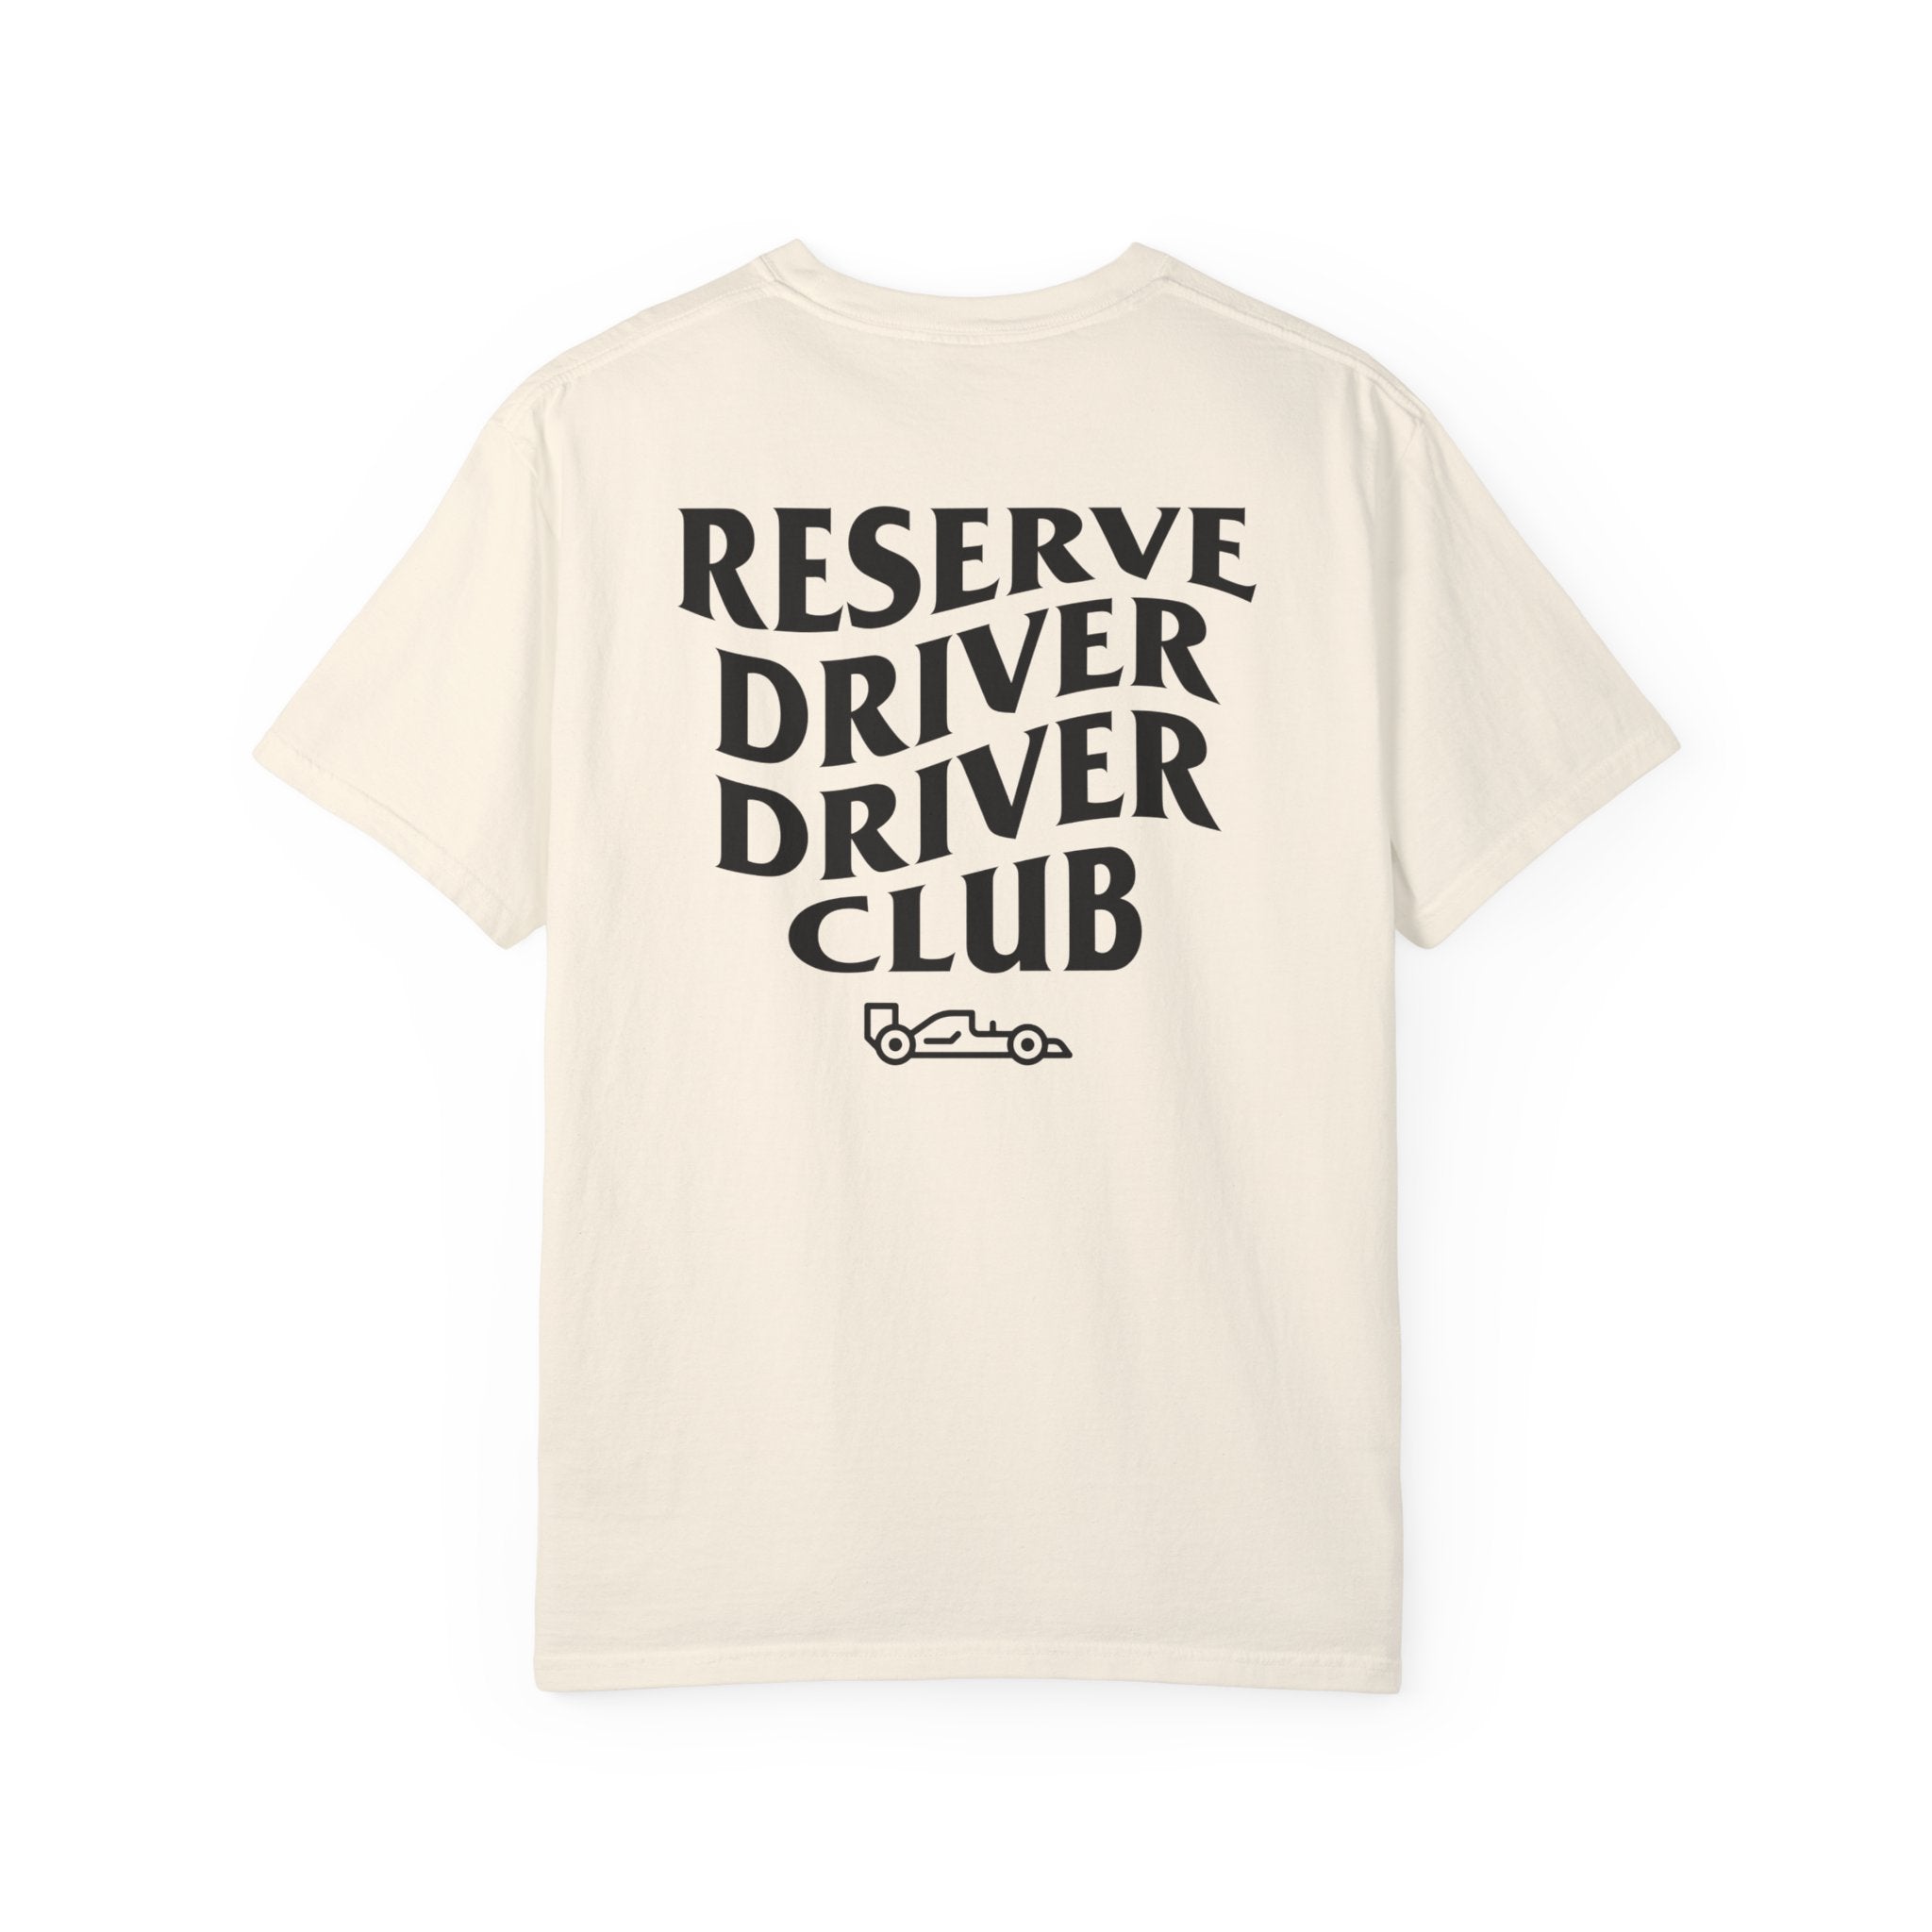 Reserve Driver Driver Club T-Shirt - FormulaFanatics